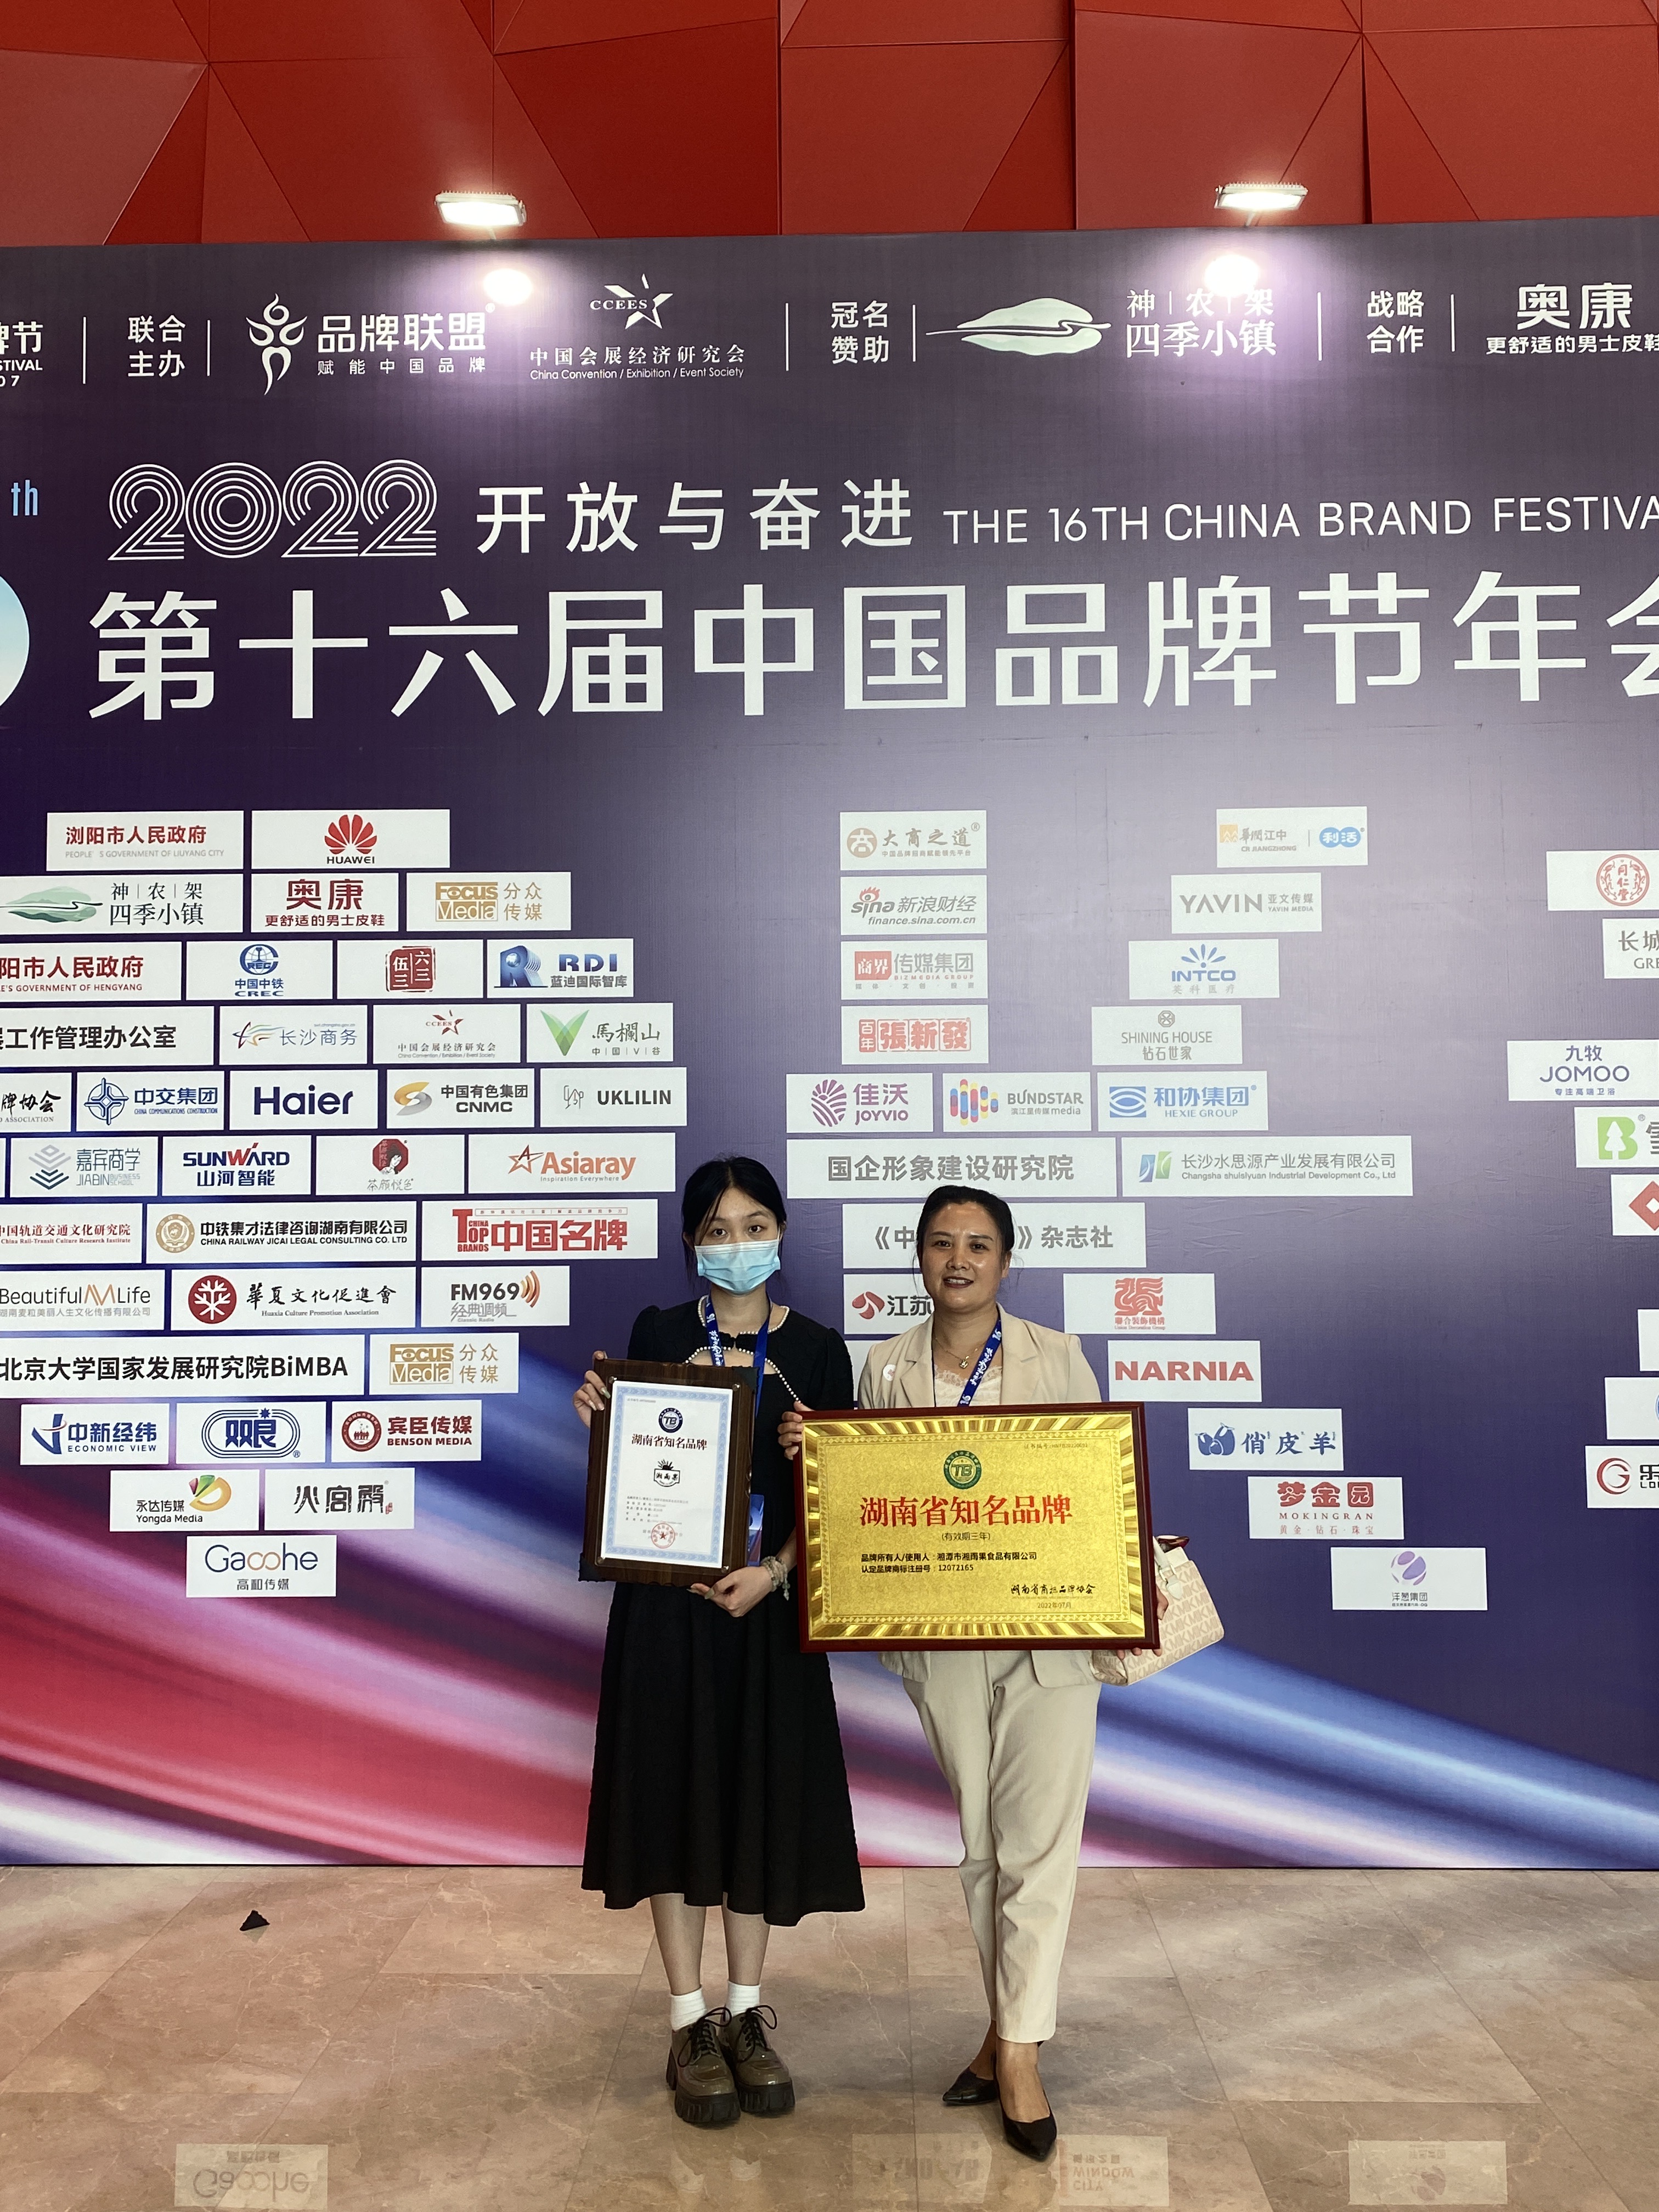 Урьдчилан бэлтгэсэн аяга таваг үйлдвэрлэгч Шиан Ю Гуо Хунань алдартай брэндээр шагнагджээ